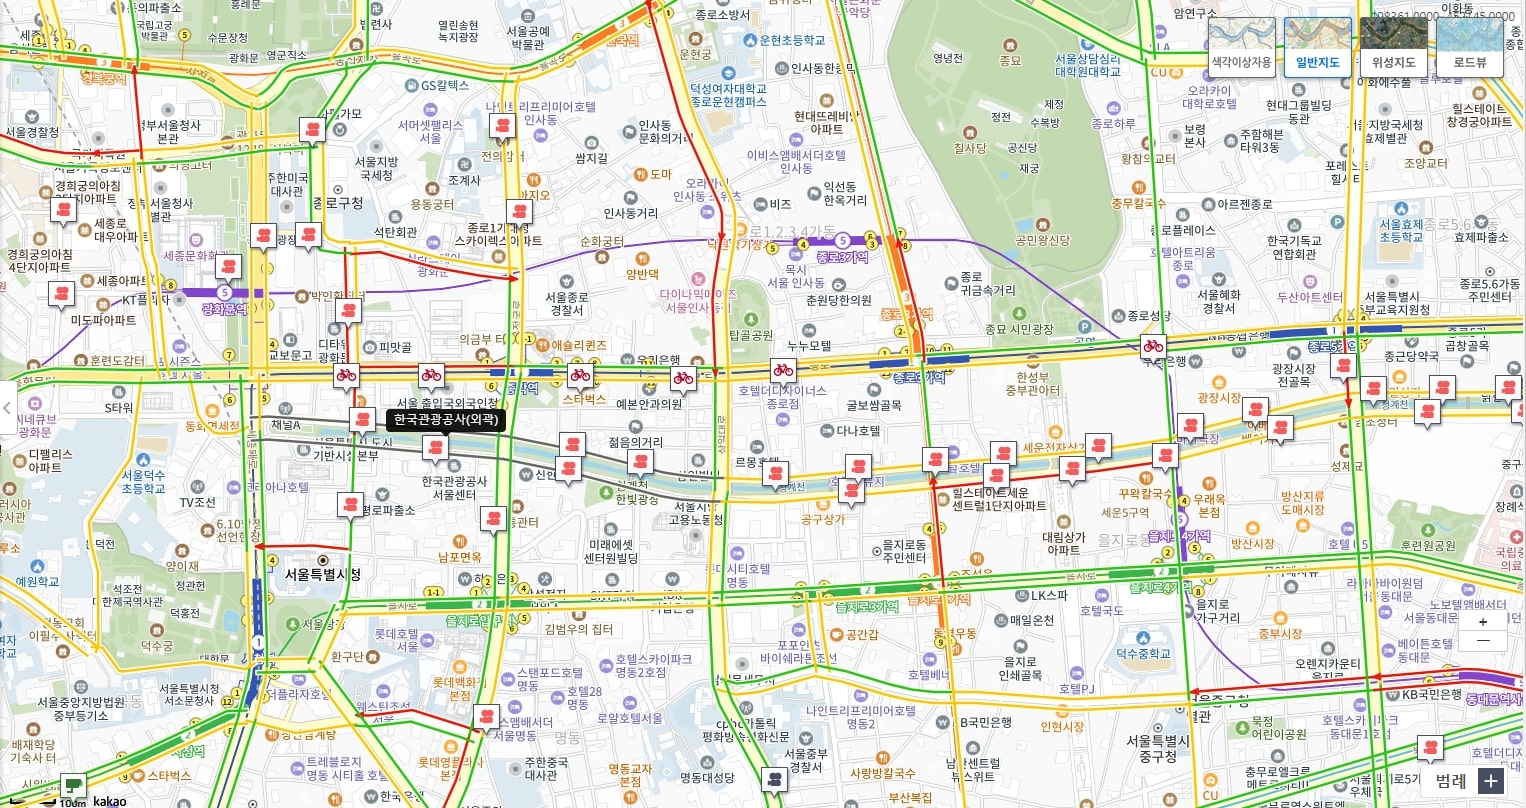 서울특별시 교통정보 시스템 불법주정차 단속 카메라 지도